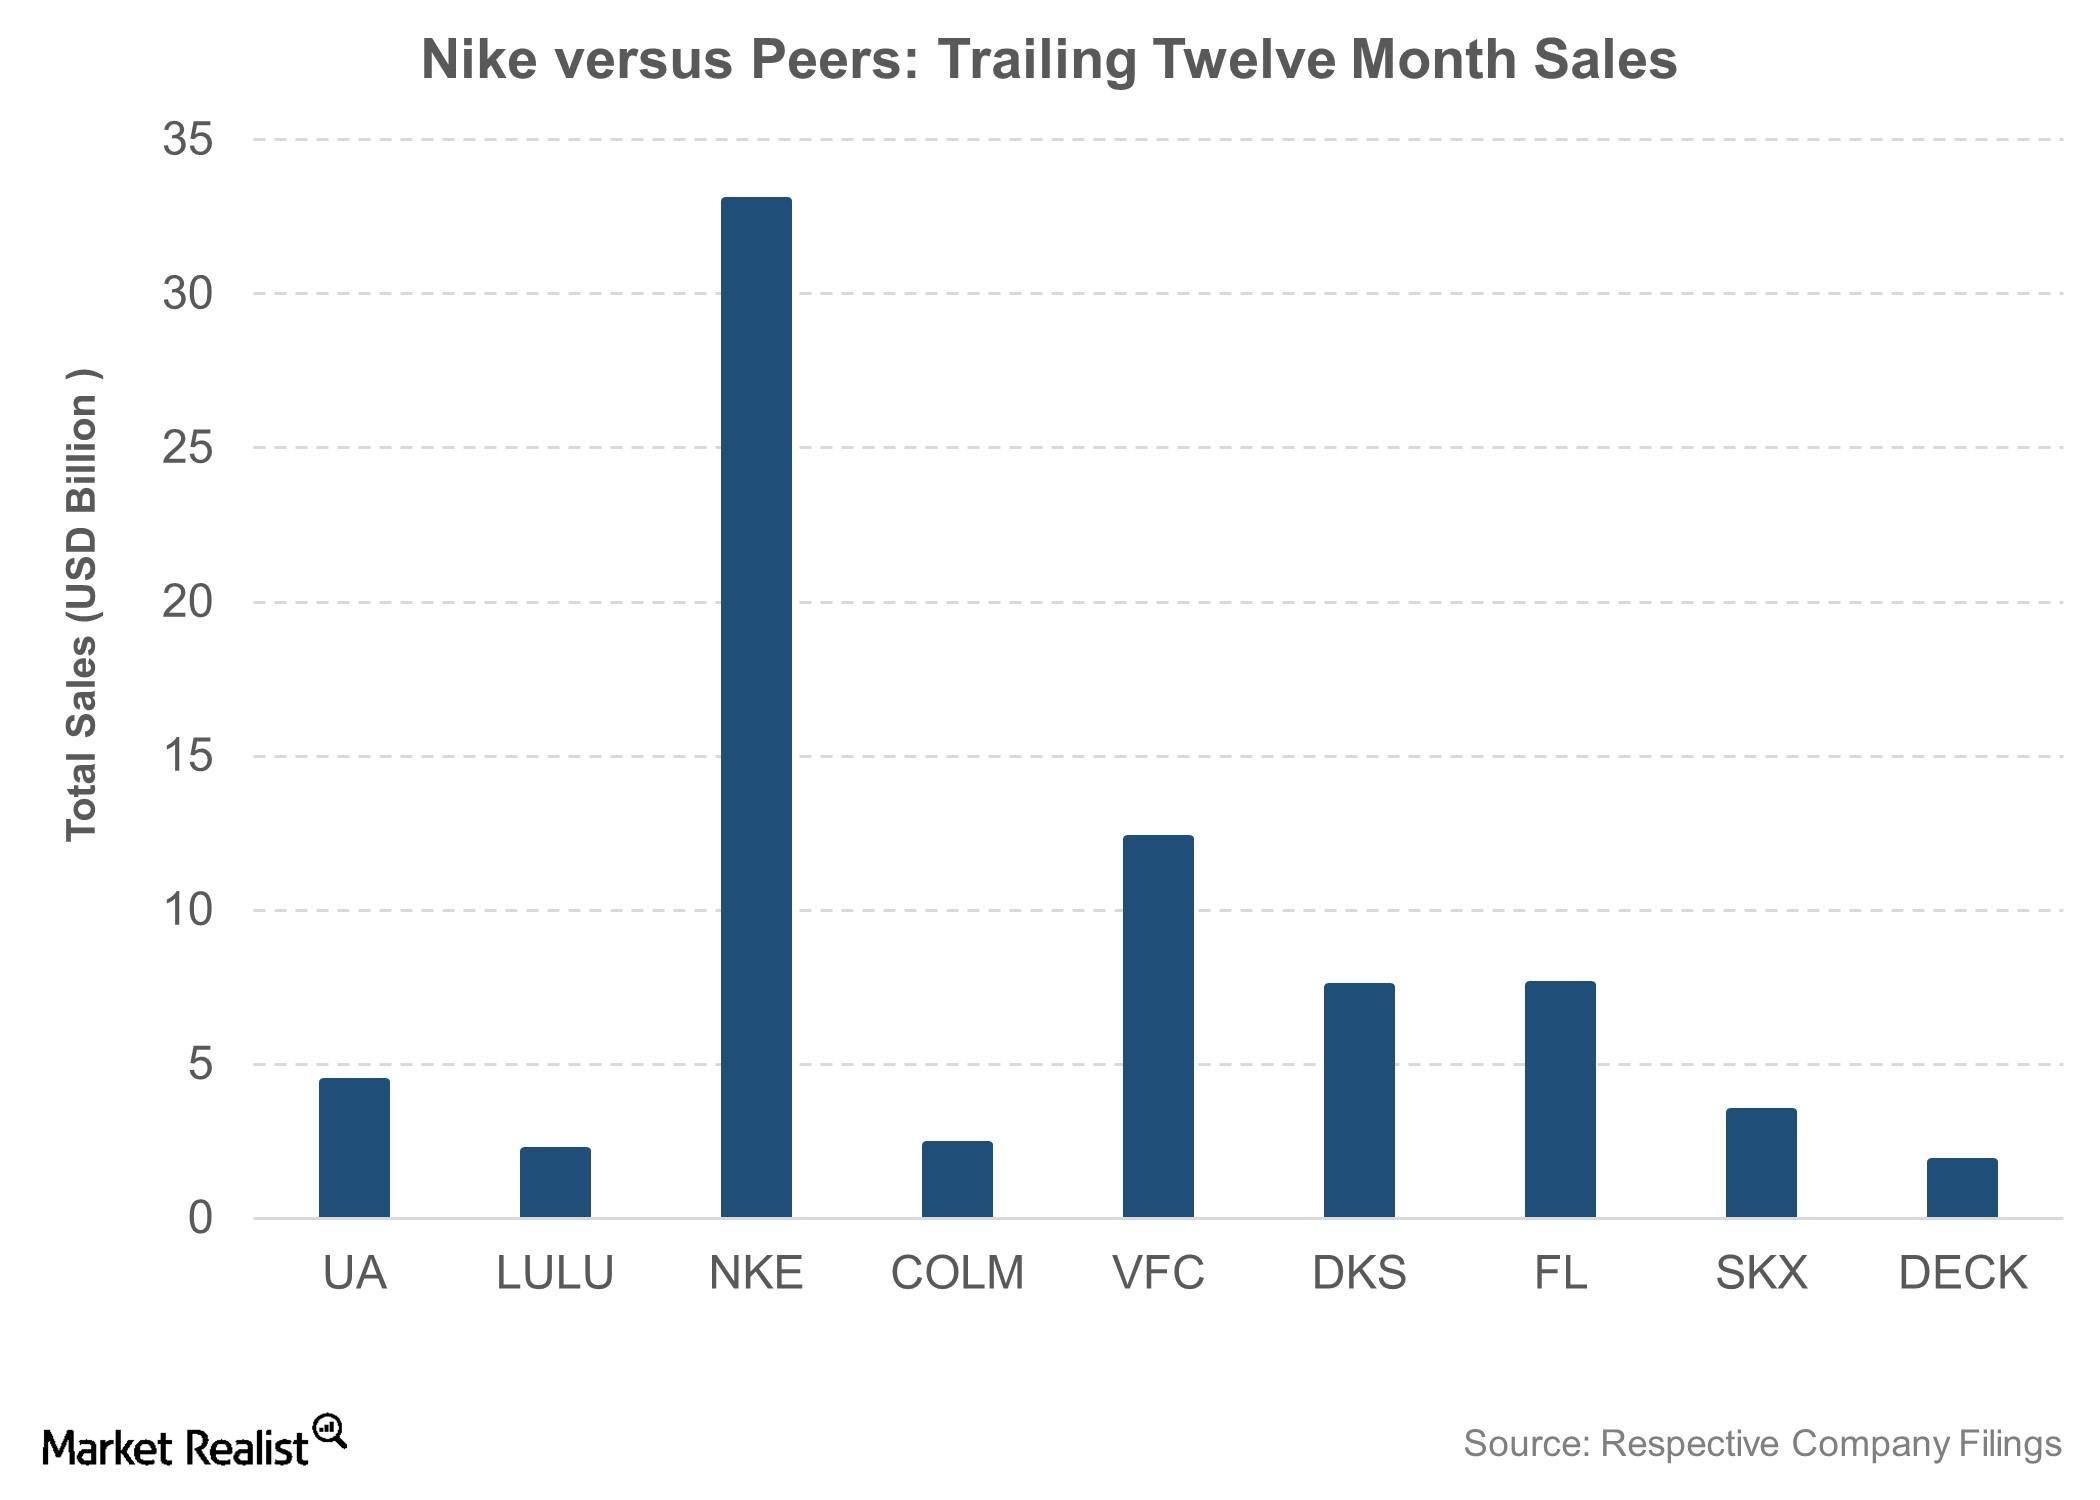 nike footwear market share